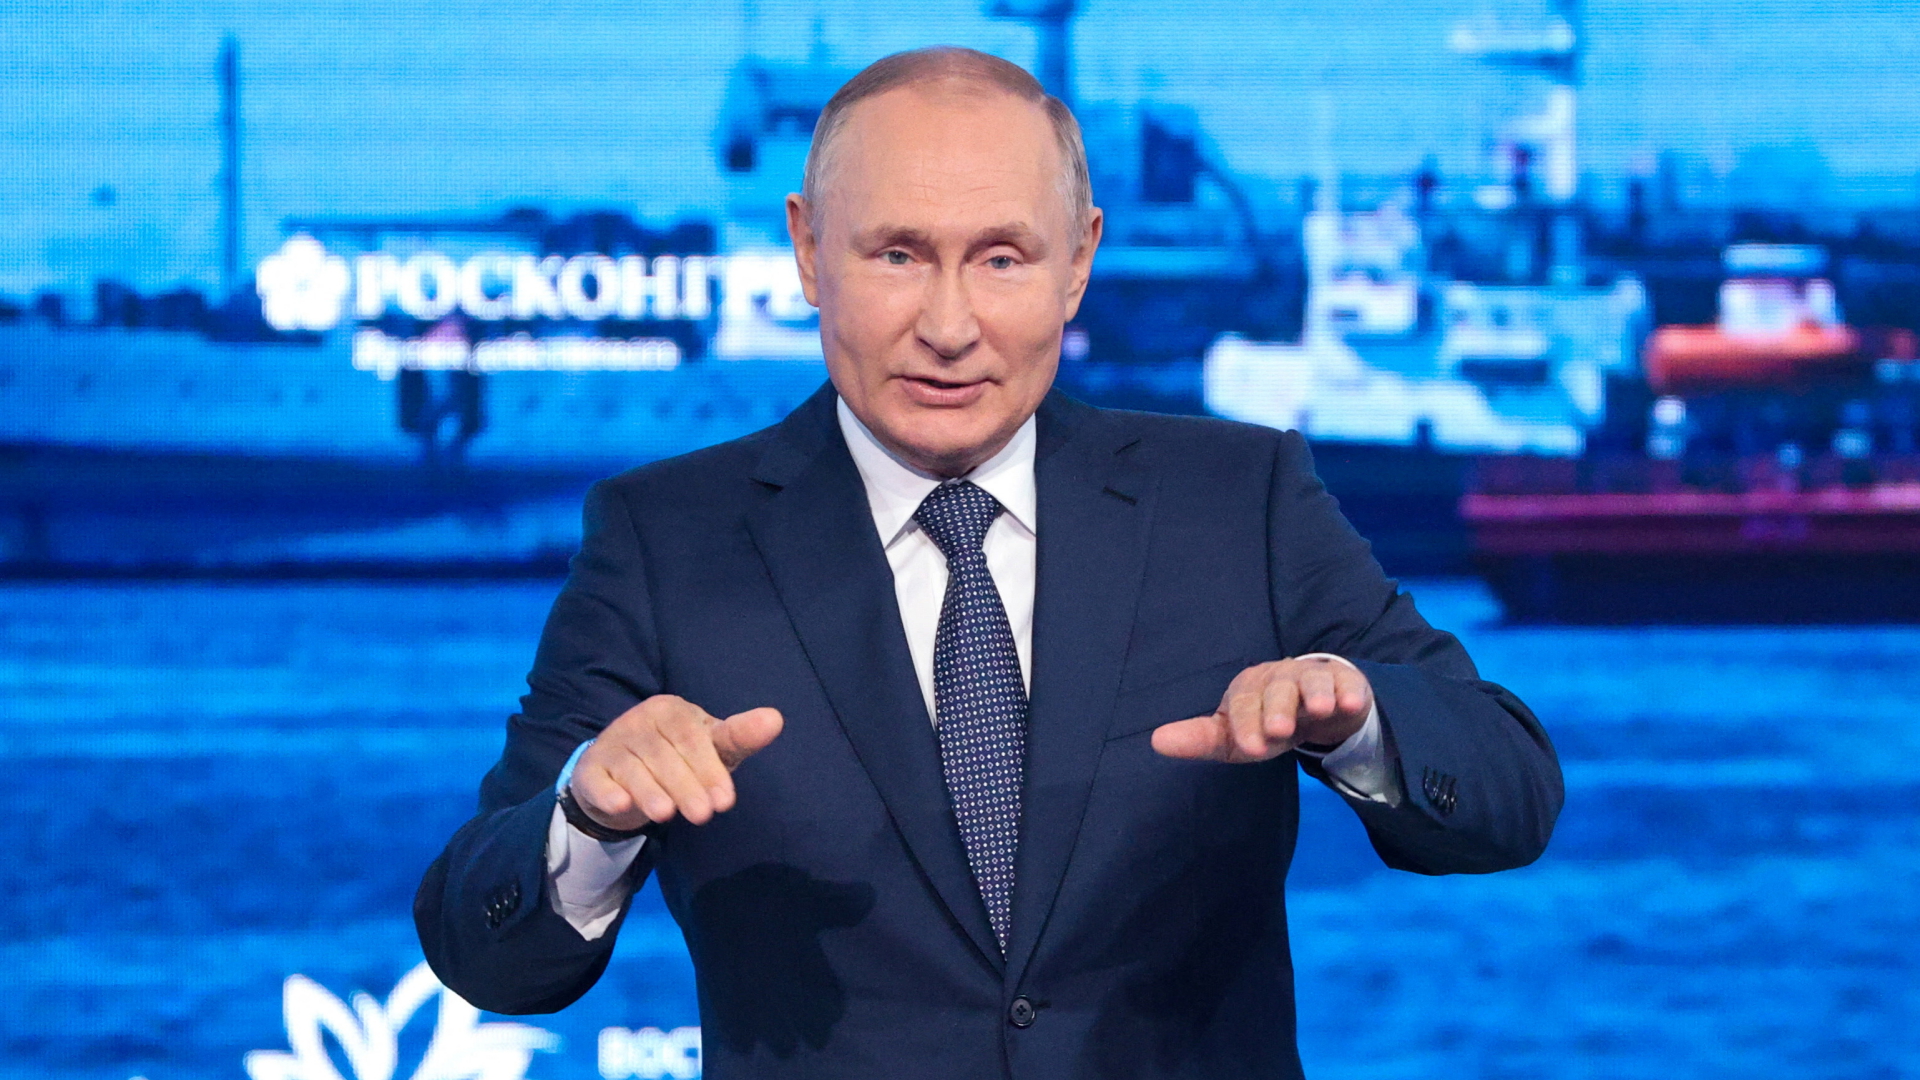 Russlands Präsident Wladimir Putin spricht beim Wirtschaftsforum in Wladiwostok | via REUTERS